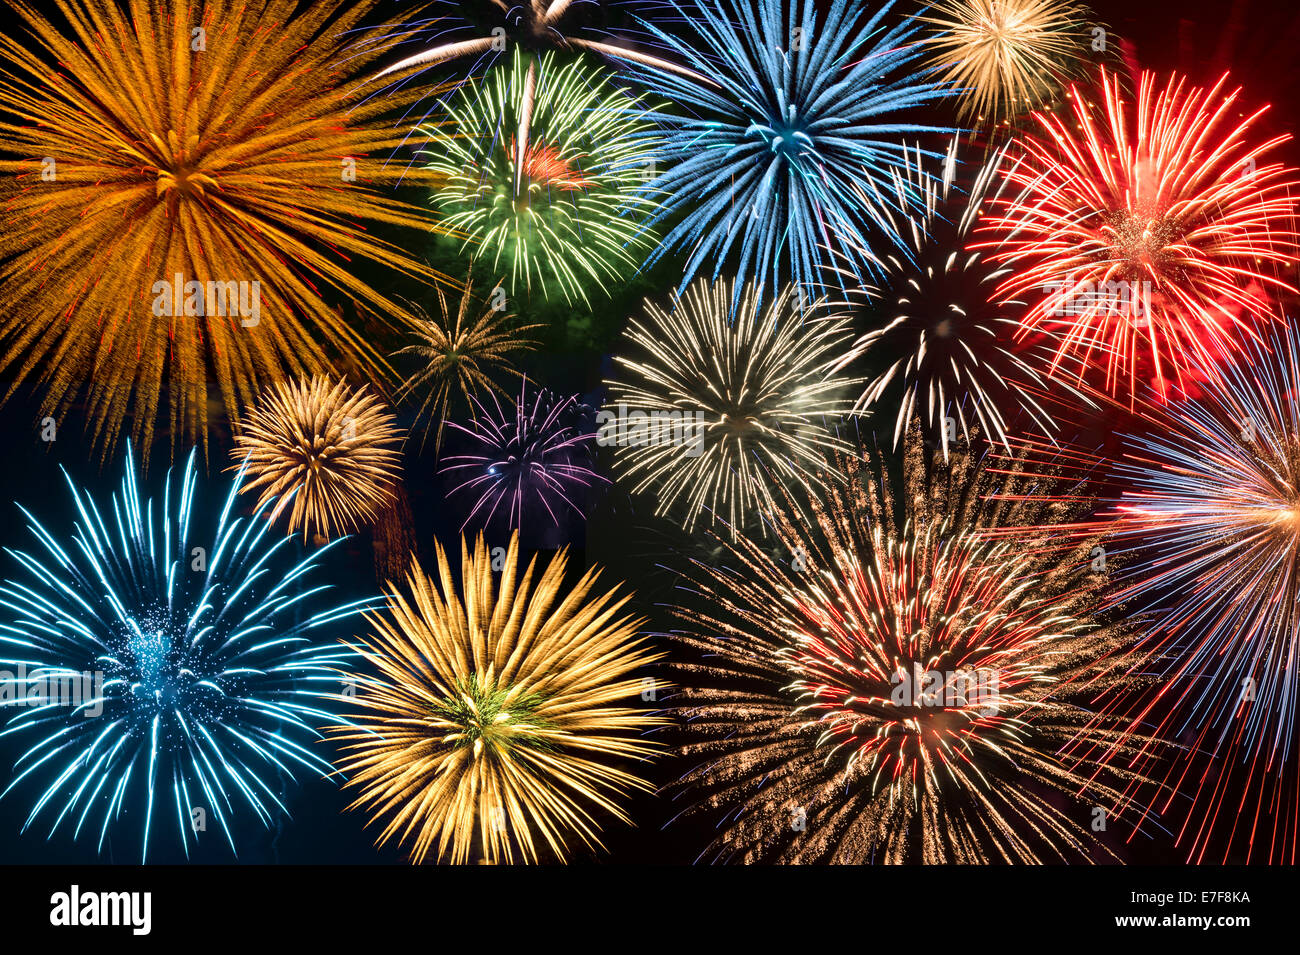 Fireworks exploding in night sky Stock Photo